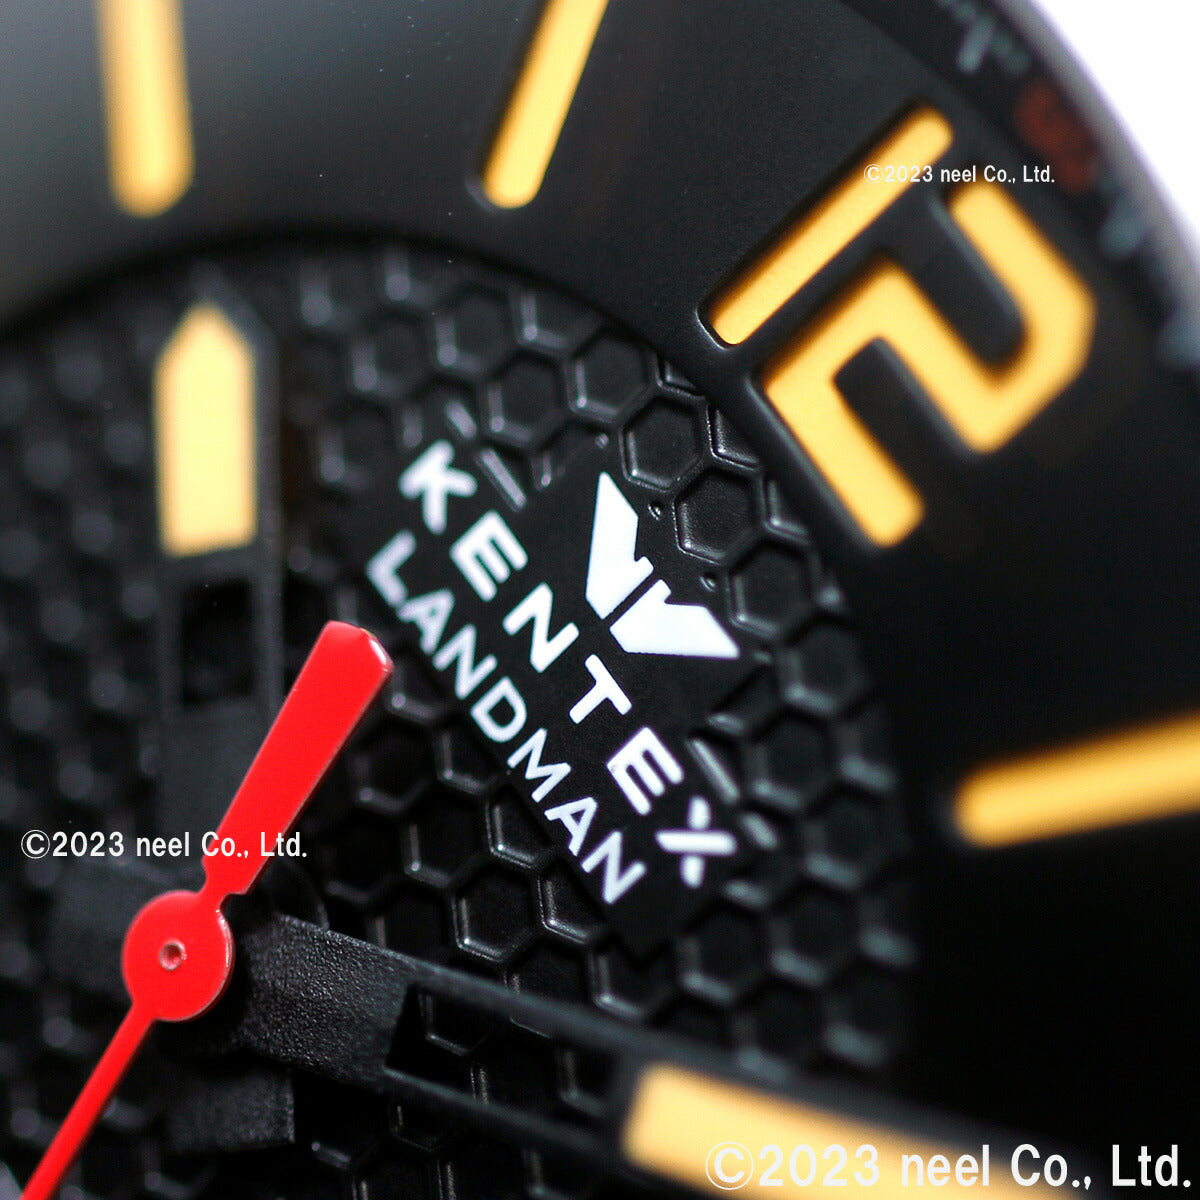 ケンテックス KENTEX 限定モデル 腕時計 時計 メンズ ランドマン アドベンチャー デイト 日本製 S763X-4